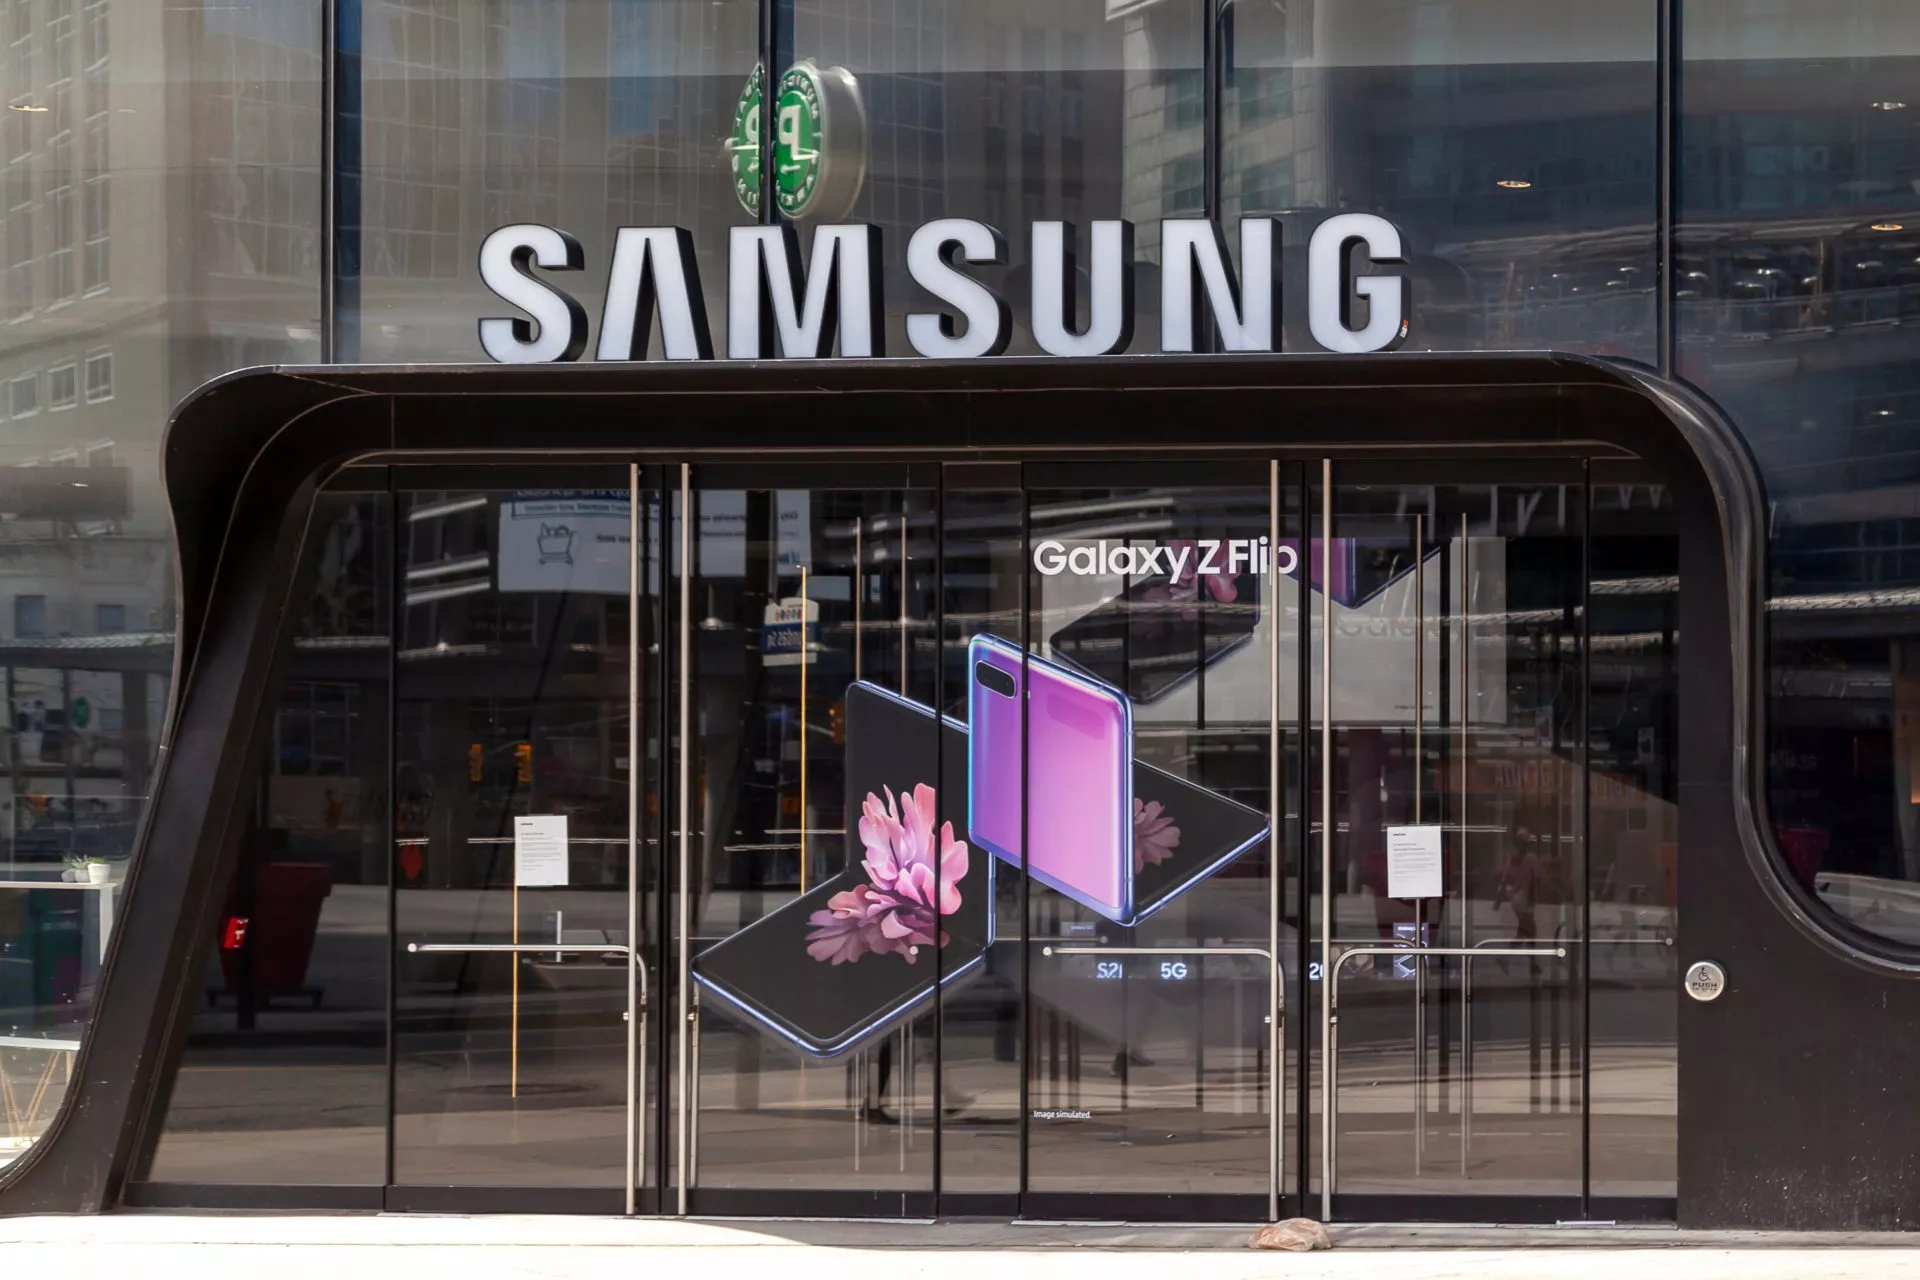 Pre-order klanten van Samsung’s Galaxy Z Fold & Flip 4 krijgen NFT’s